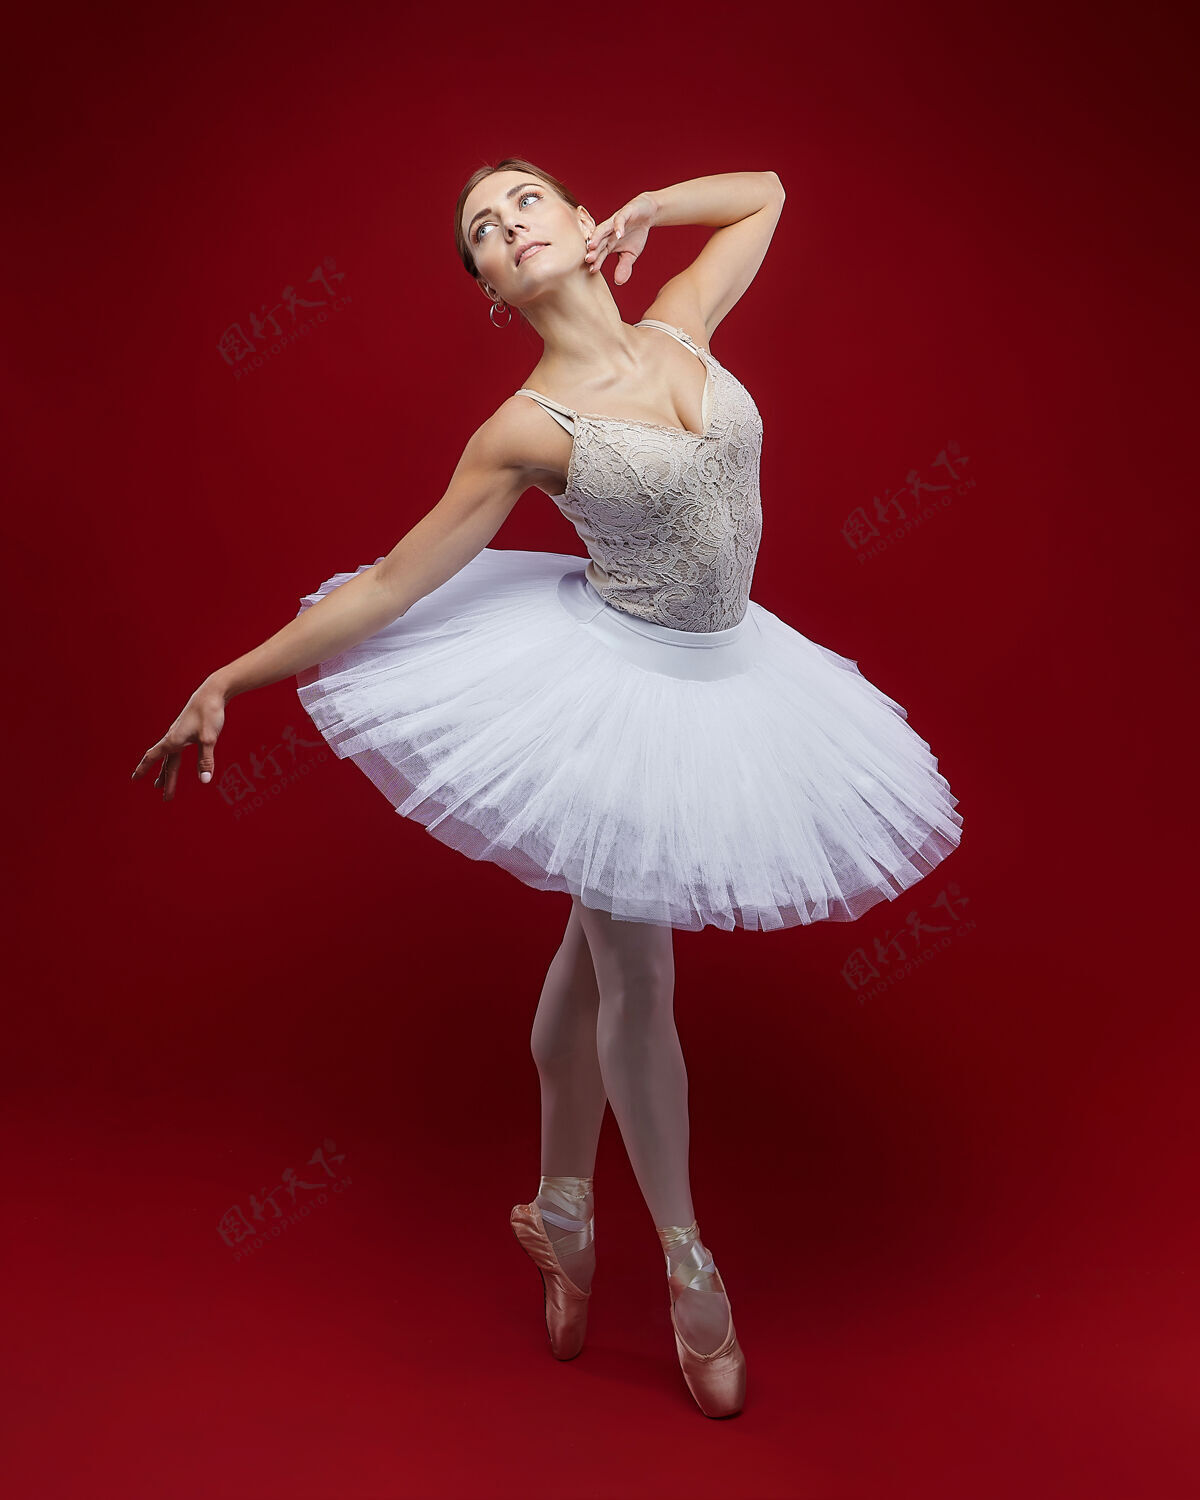 漂亮迷人的芭蕾舞演员在红色背景上优雅地摆出姿势芭蕾腿美女